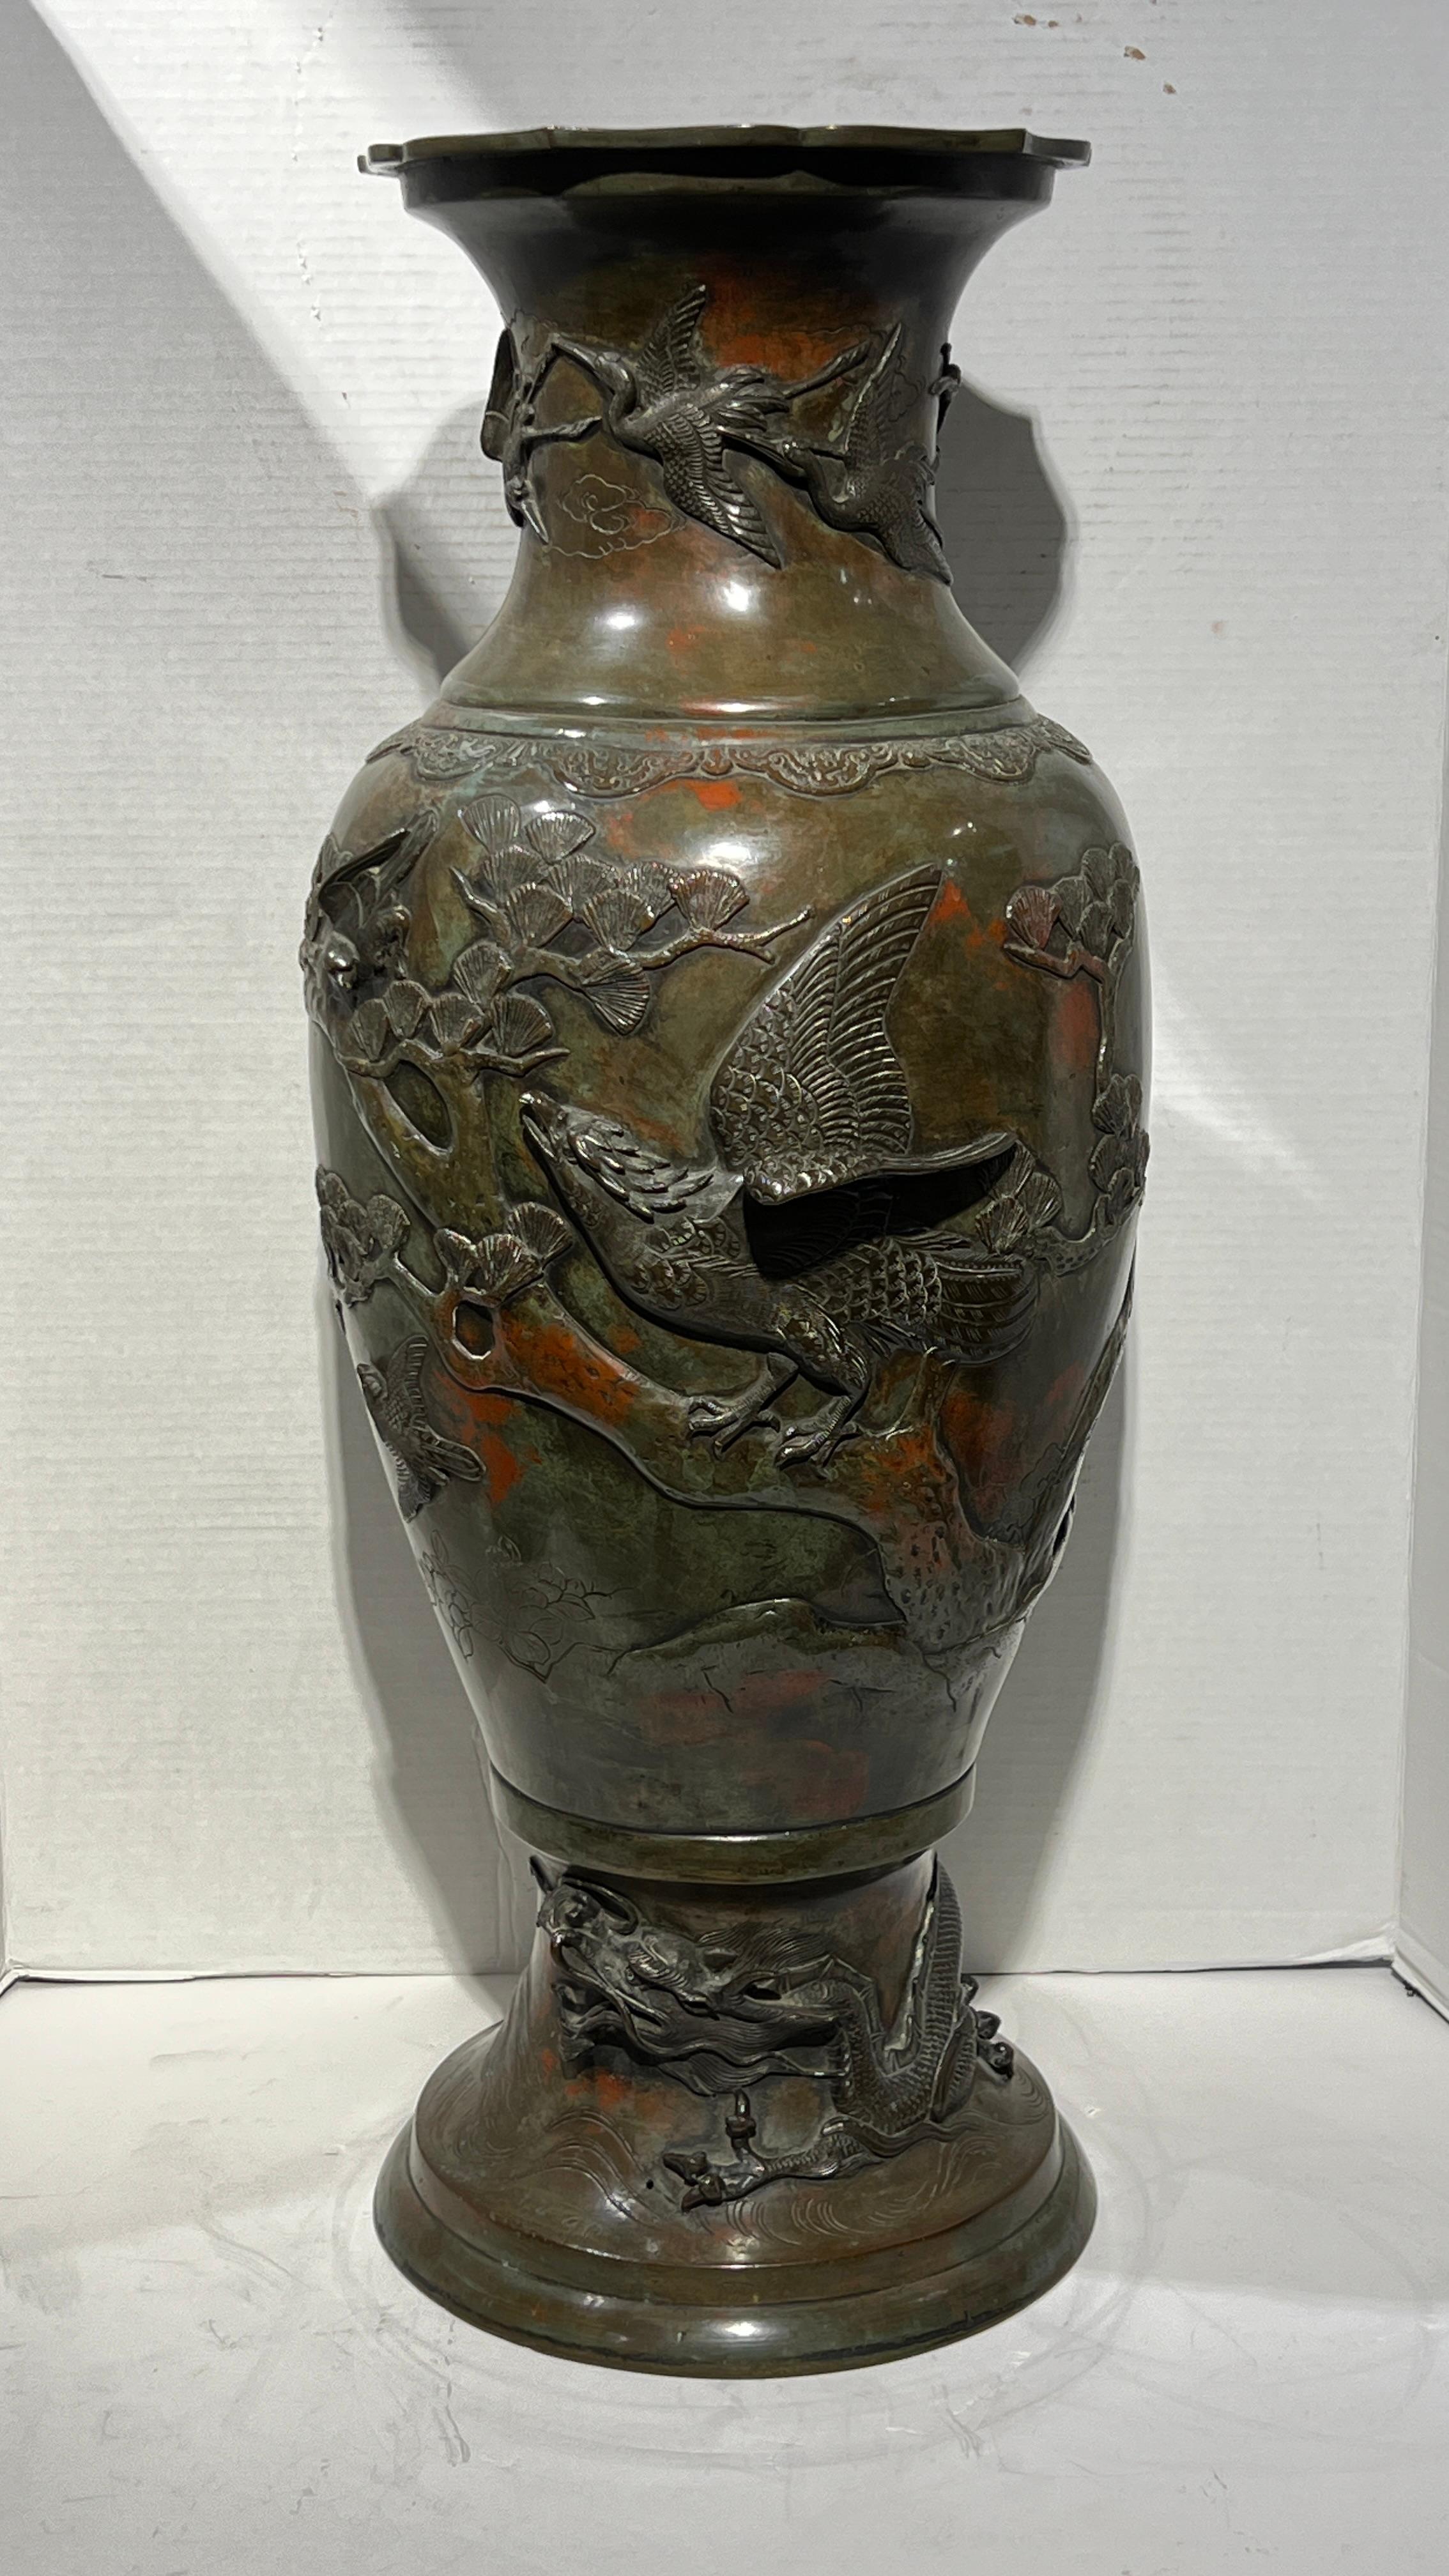 Vase en bronze très particulier et finement moulé avec un paon et d'autres oiseaux en relief, avec une patine polychrome exceptionnelle.  29 7/8 pouces.  Voir notre autre annonce pour un vase très similaire, car ils feraient une belle paire assortie.